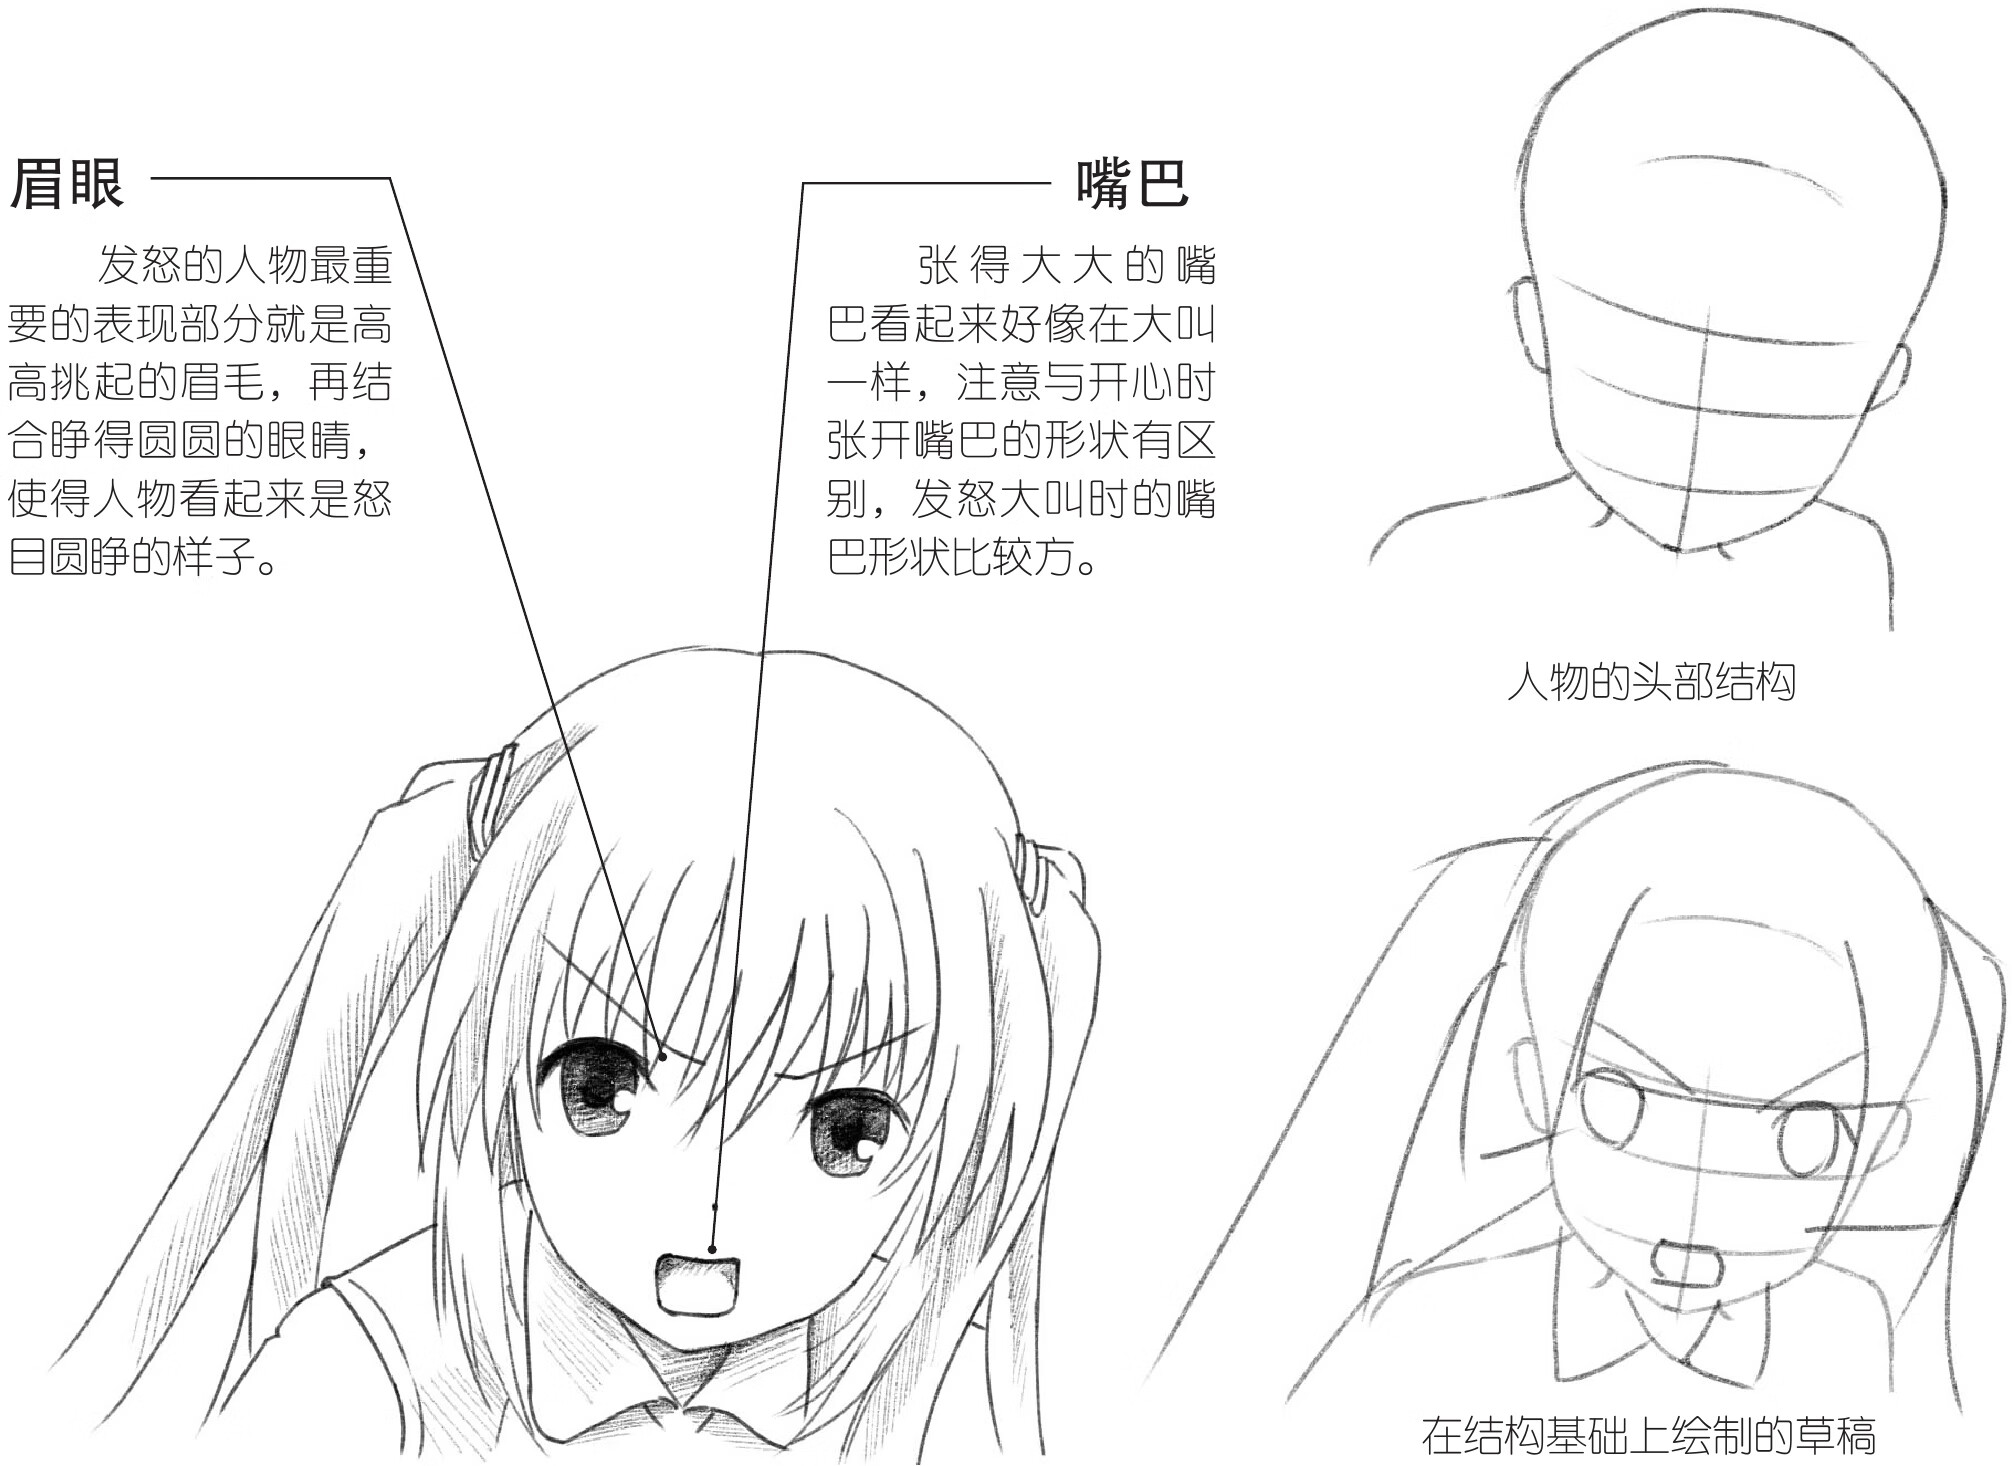 通向漫画家之路：萌少女绘制练习册pdf/doc/txt格式电子书下载